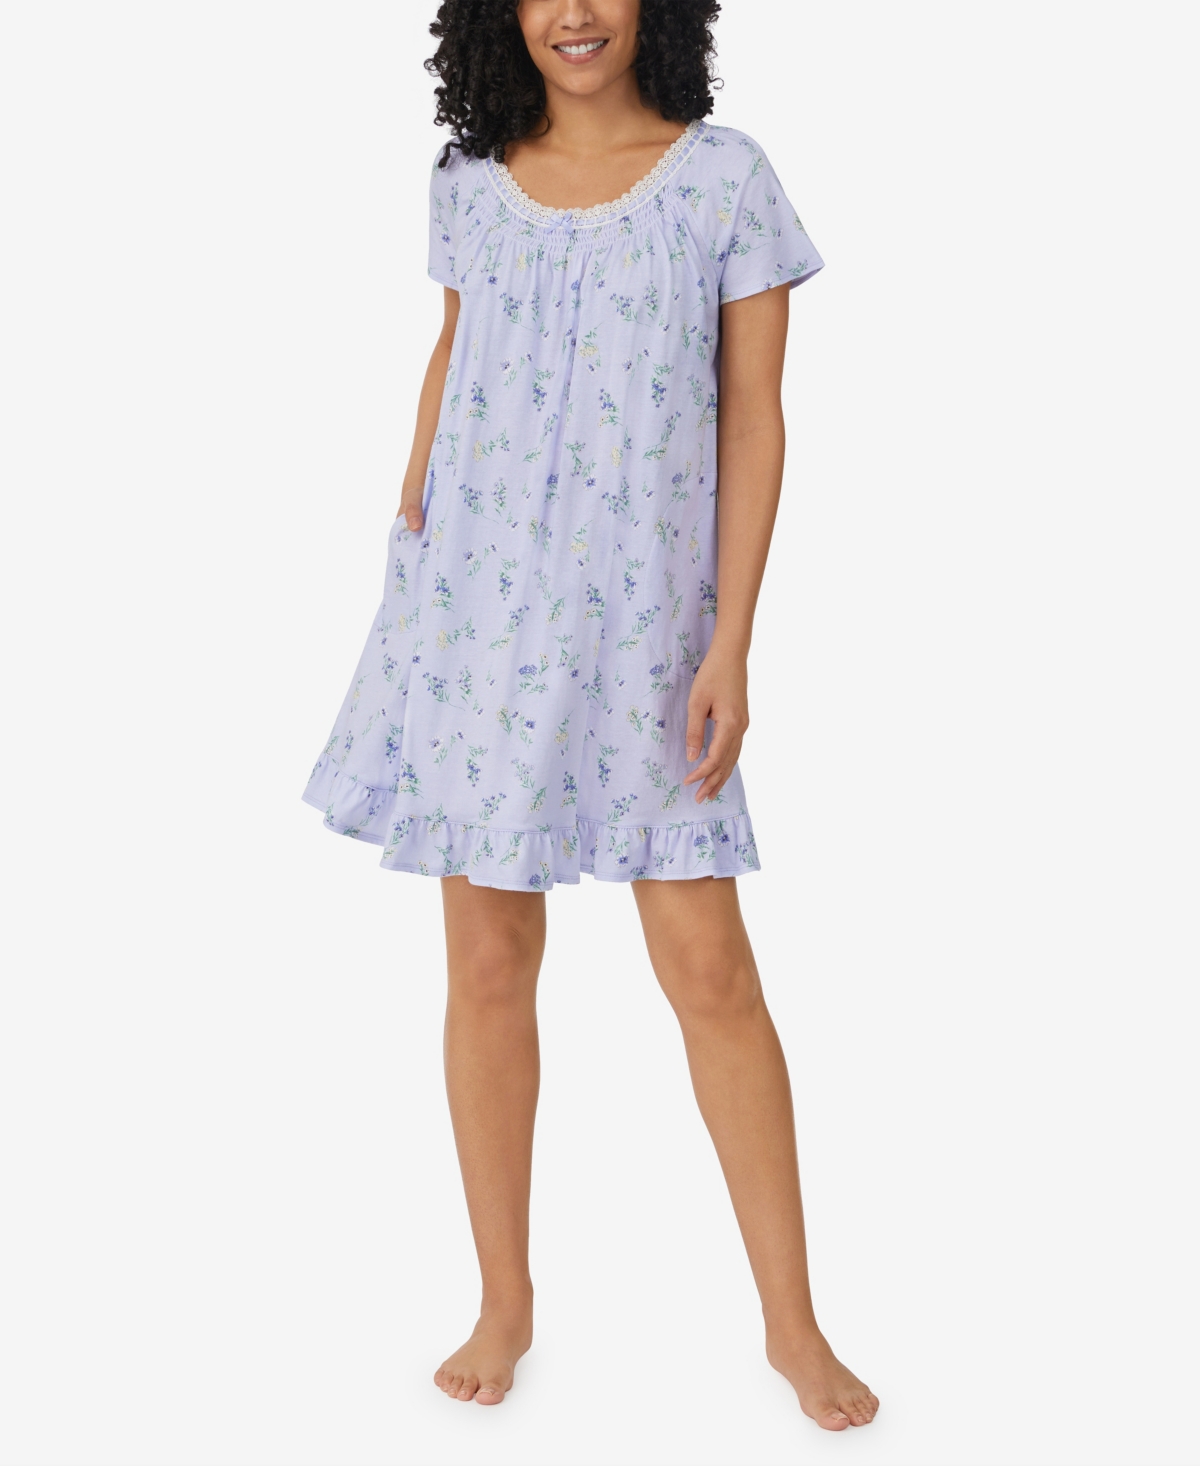 Women's Cap Sleeve Short Sleepshirt Nightgown - Blue Floral